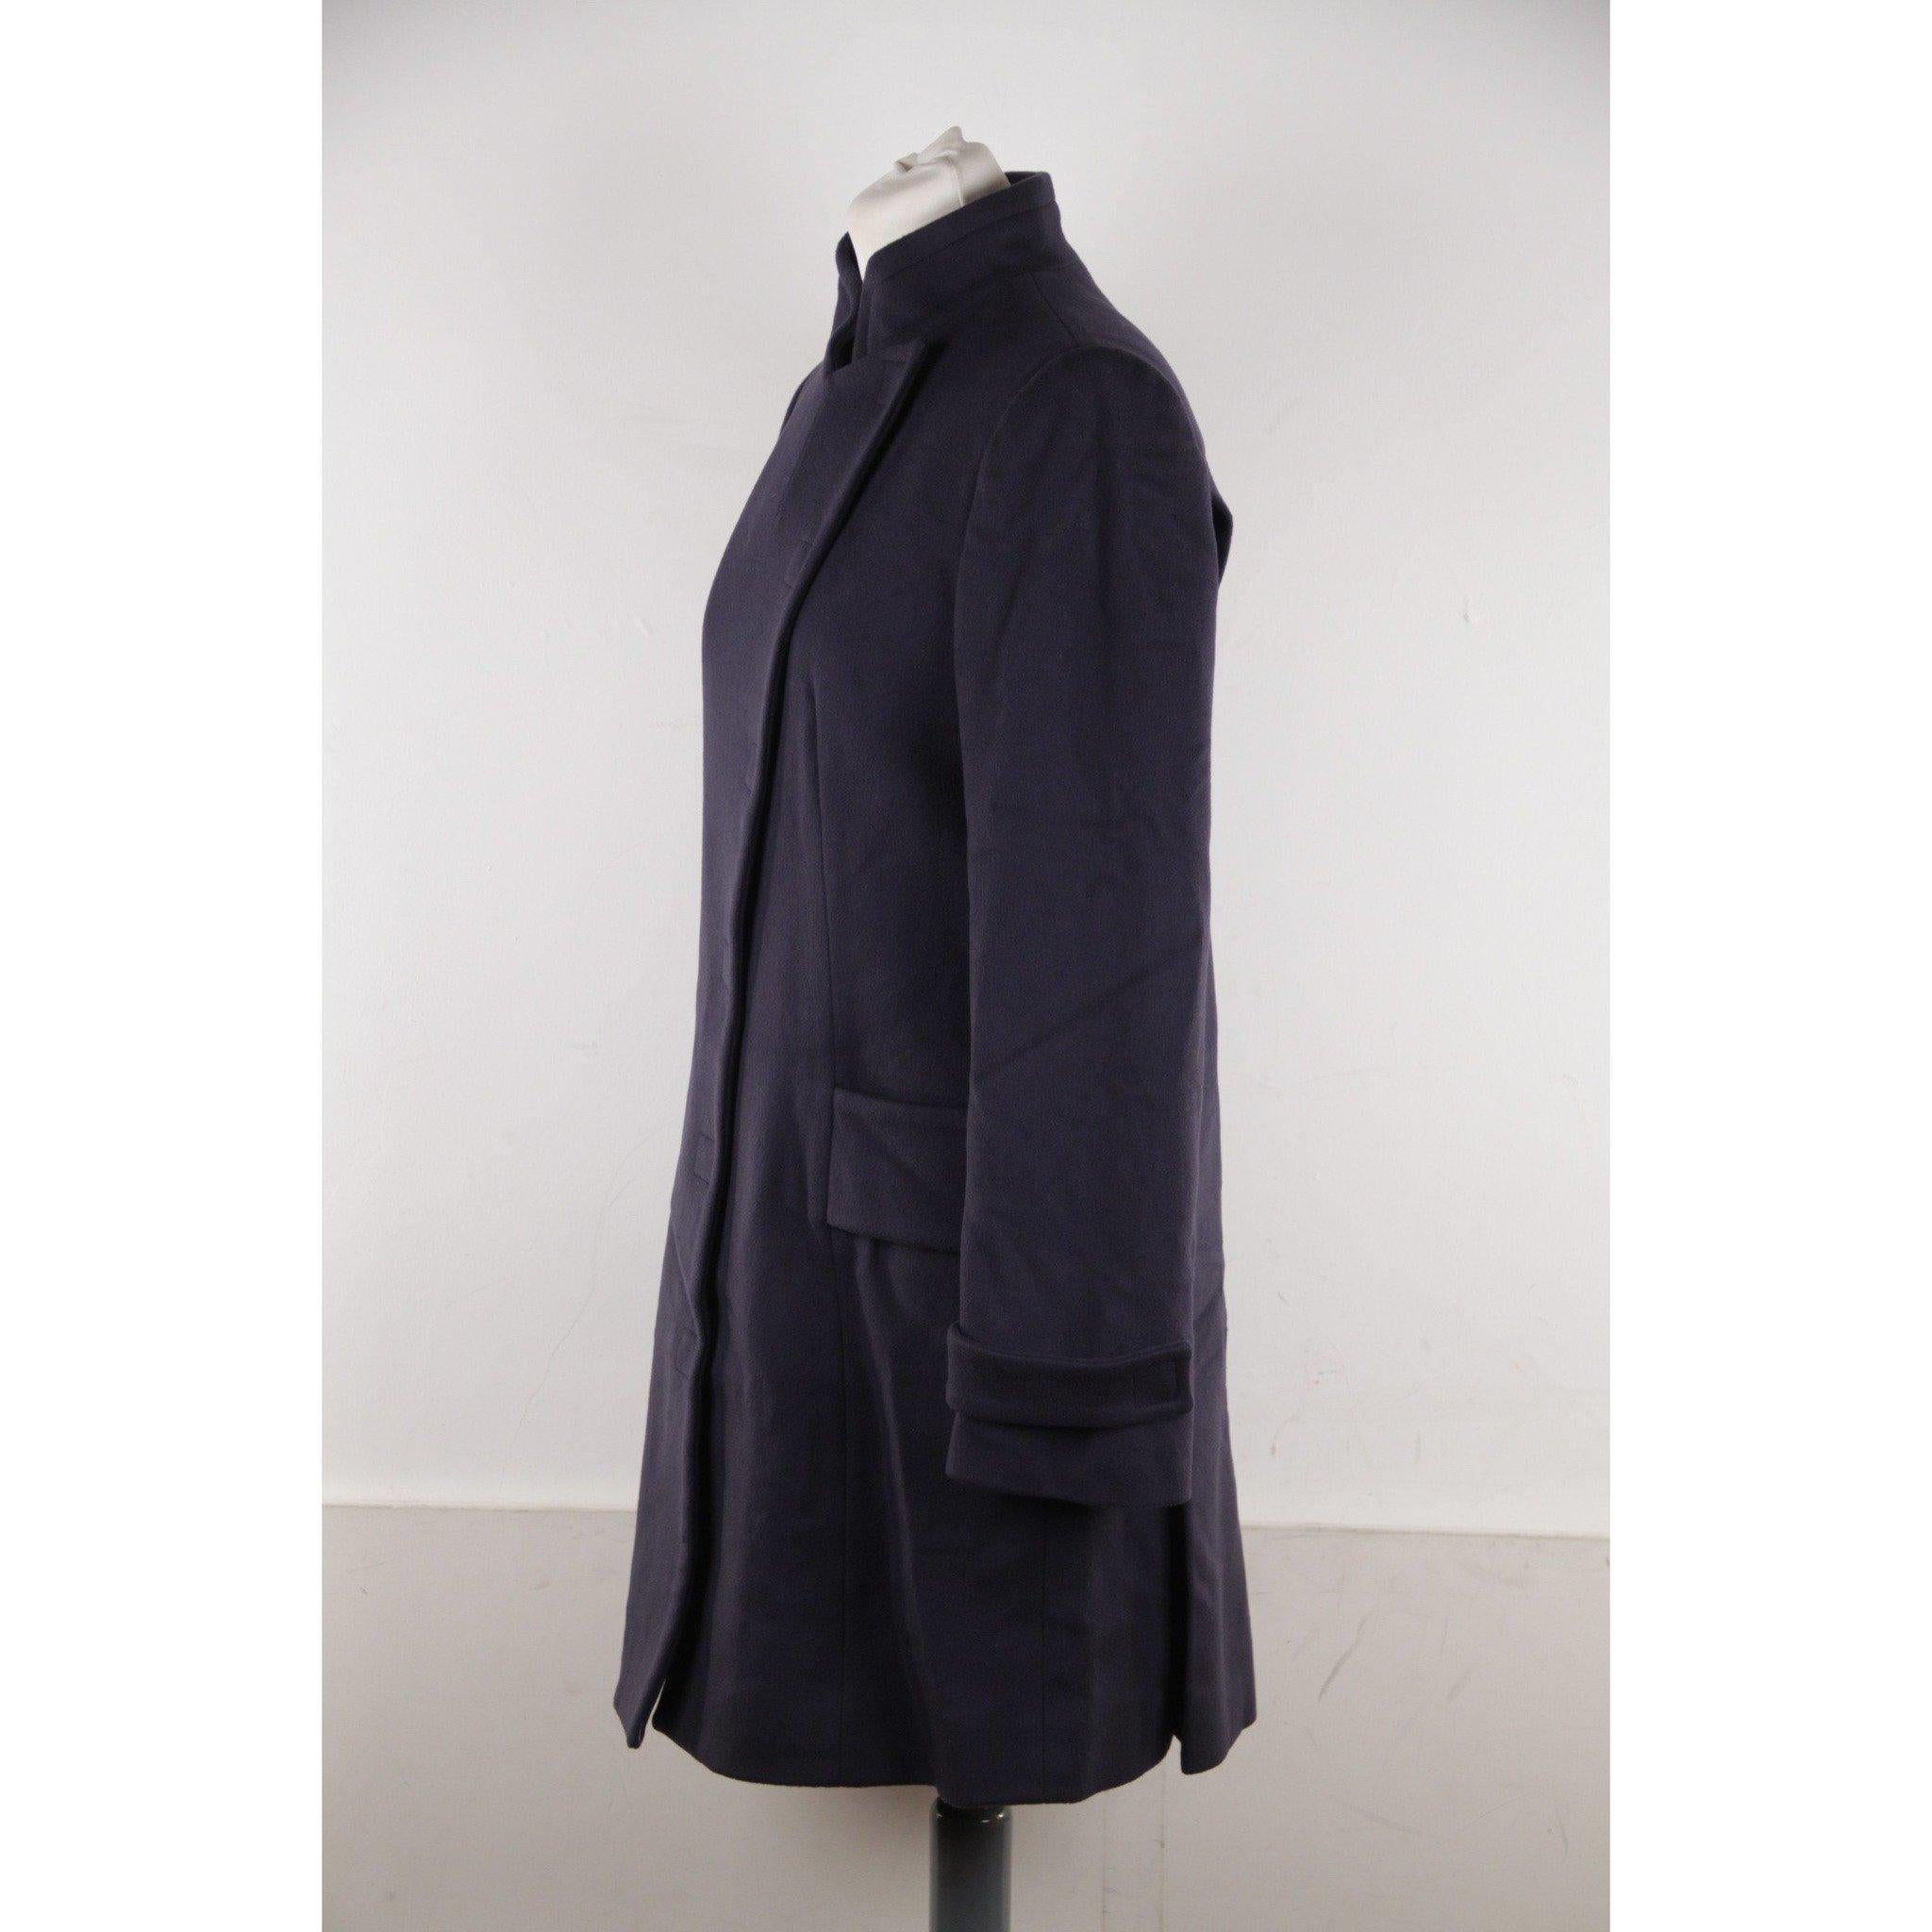 Versace - Manteau en laine bleu, collection automne-hiver 2008, taille IT 40 Excellent état à Rome, Rome